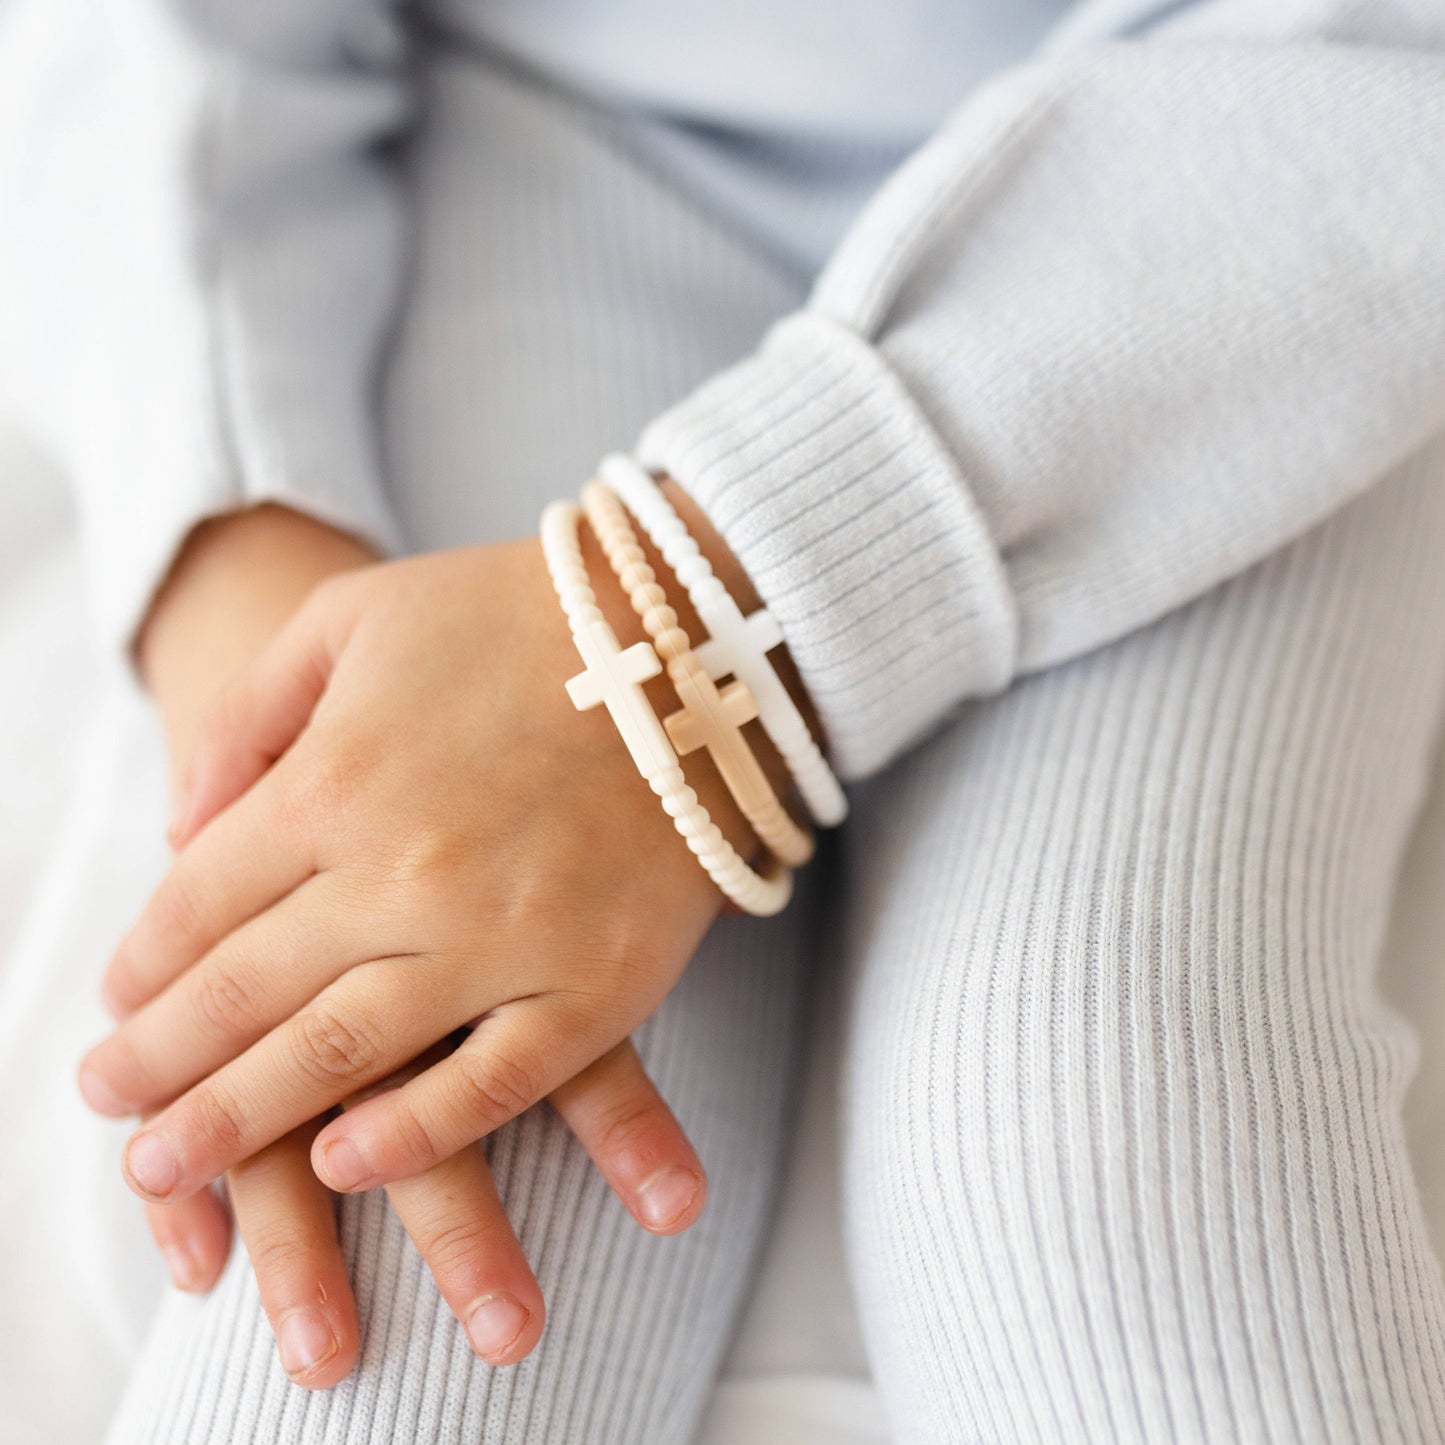 Jesus Bracelets (silicone cross bracelets) - Options Available